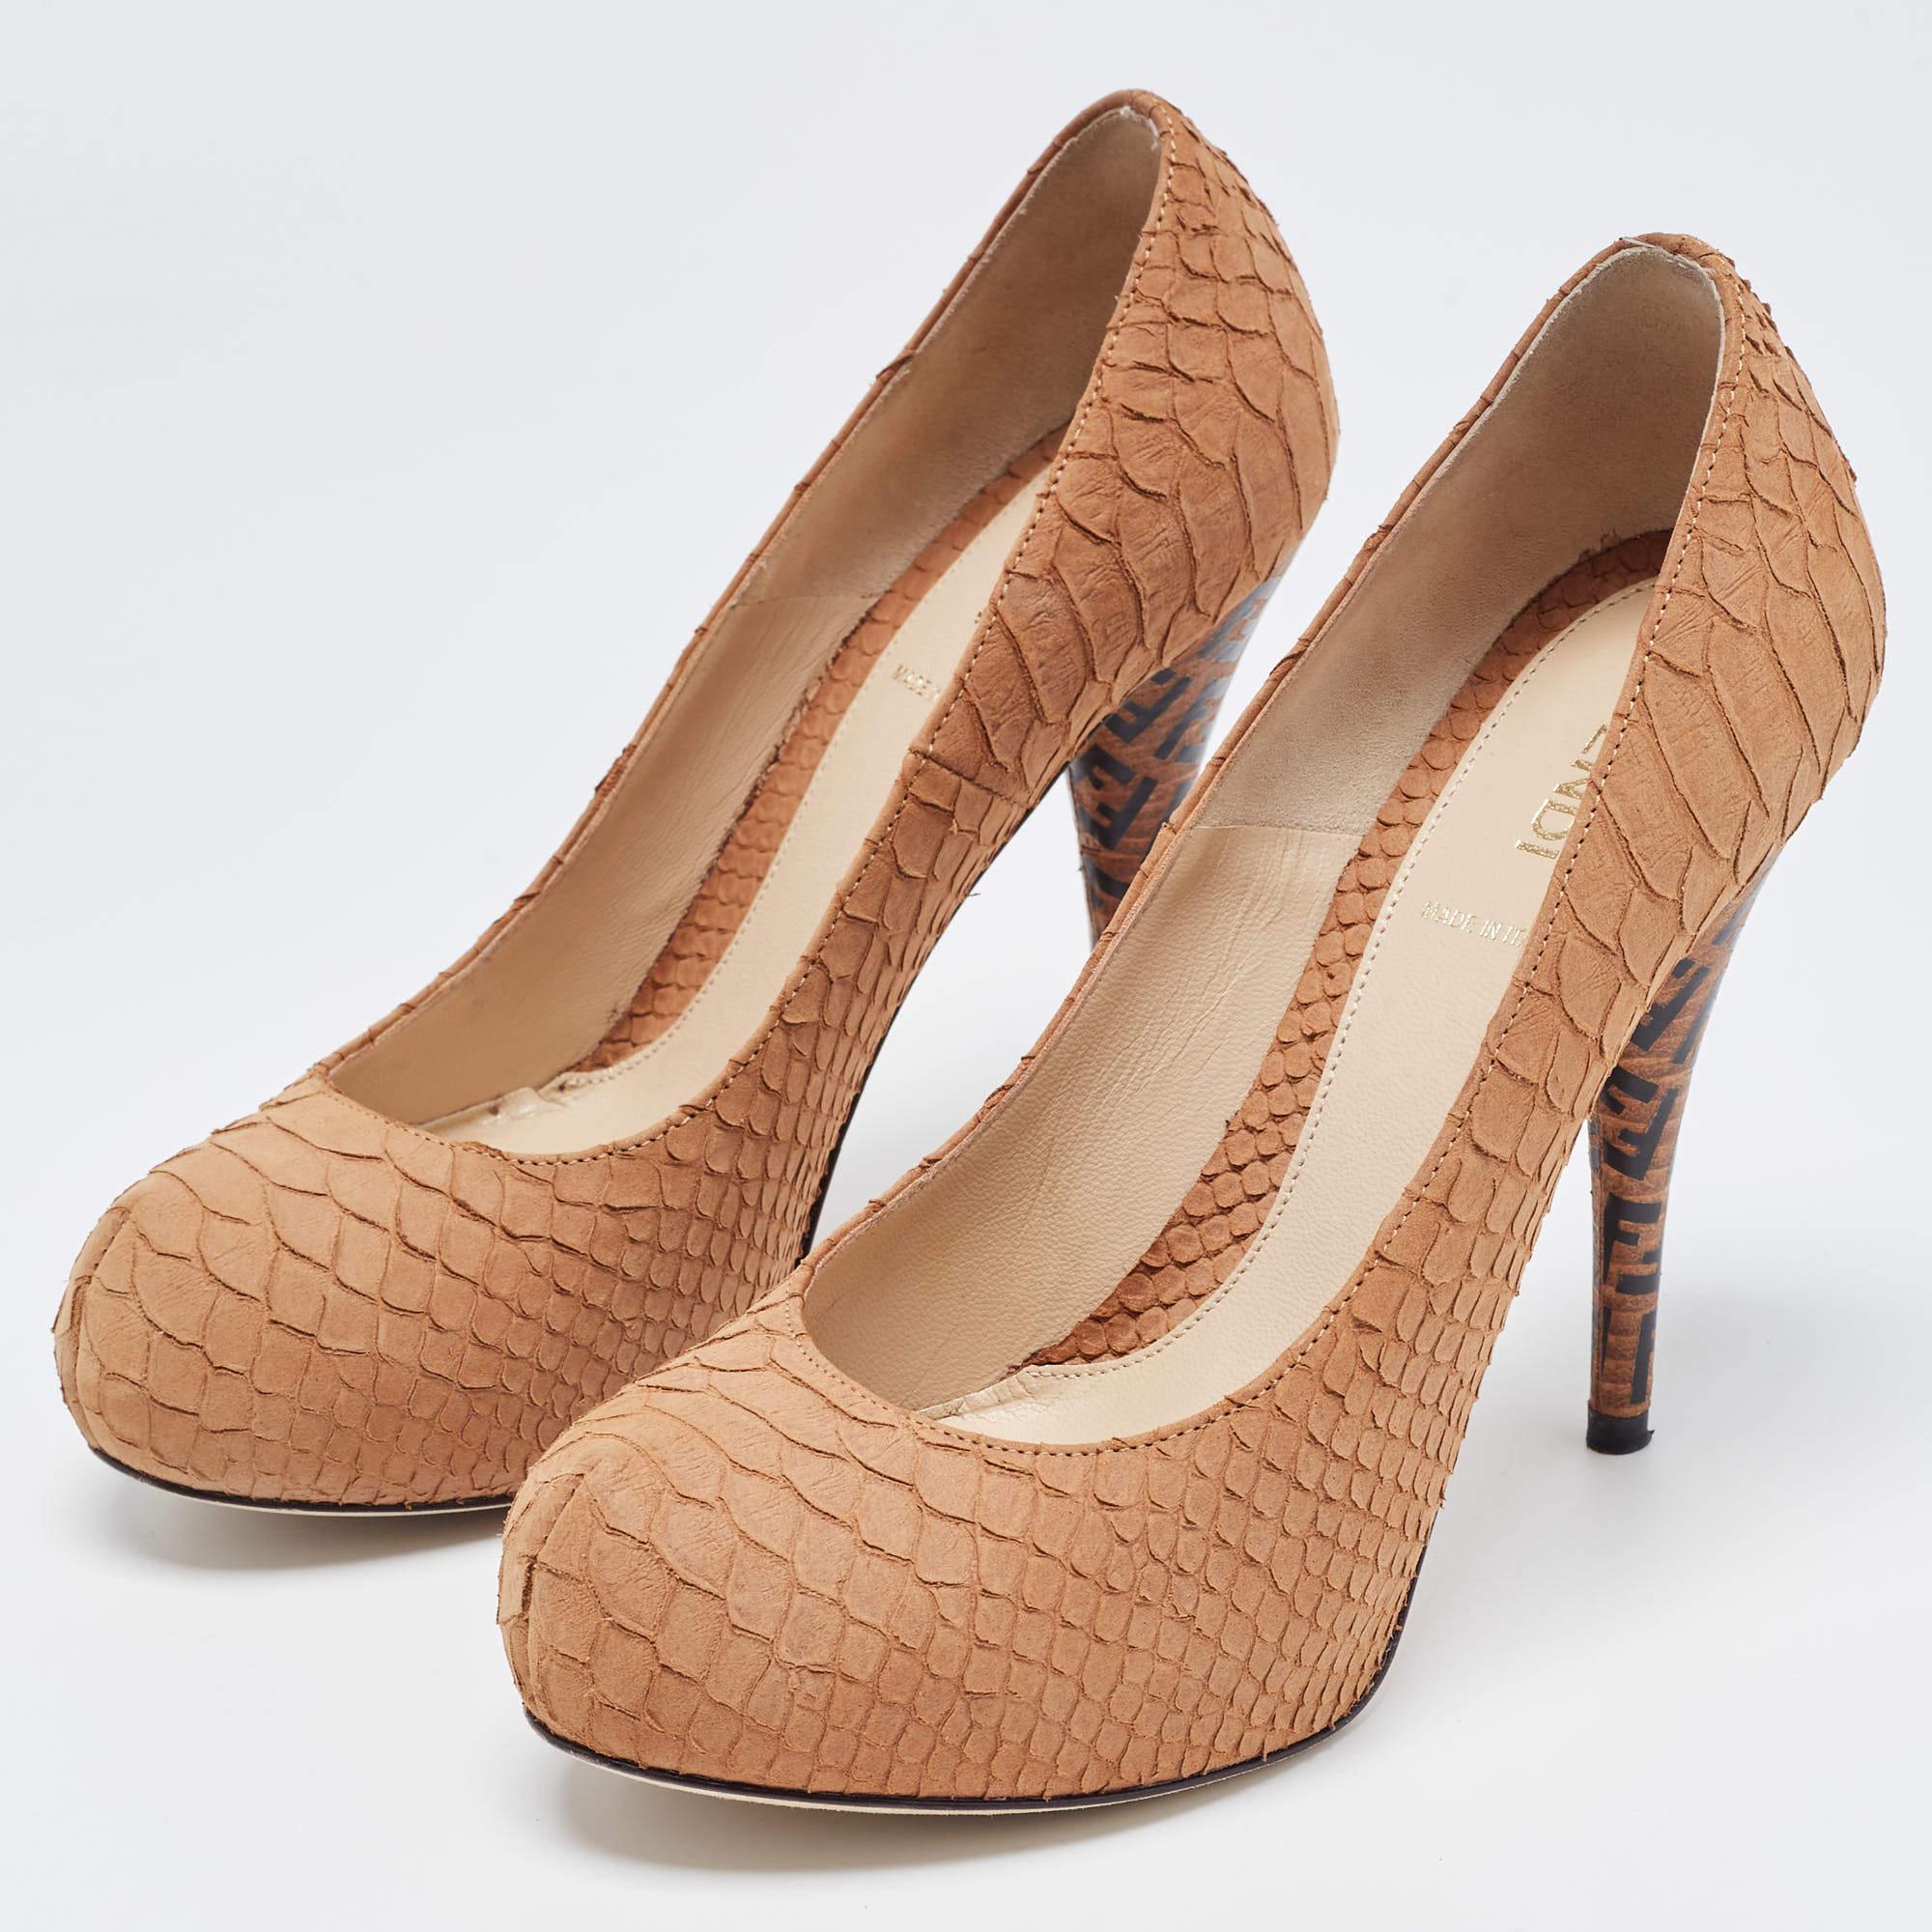 Zeigen Sie einen eleganten Stil mit diesem Paar Pumps. Diese Fendi Schuhe für Damen sind aus hochwertigen MATERIALEN gefertigt. Sie sind auf robusten Sohlen und schlanken Absätzen aufgebaut.

